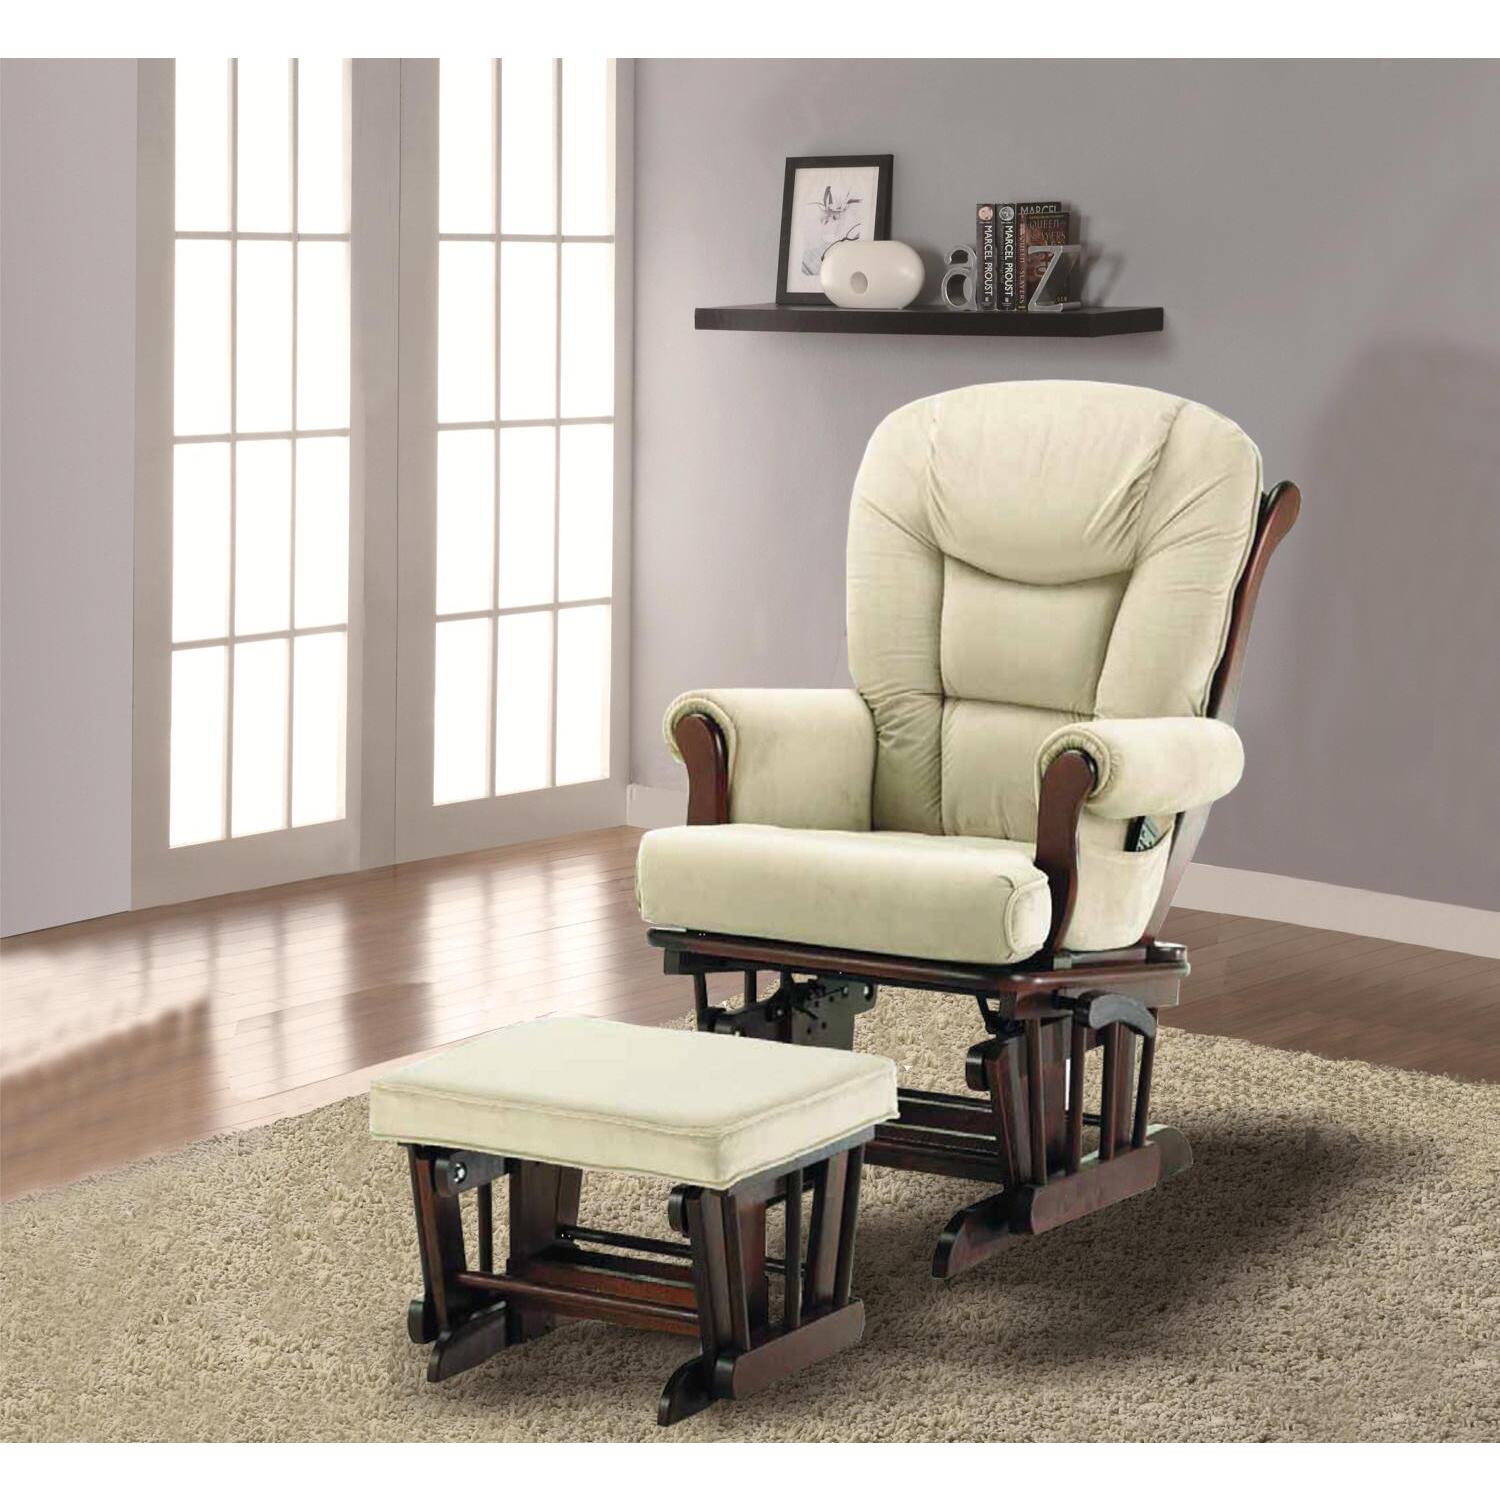 Naomi Home Storage & Wooden Legs Glider Rocking Chair, Cream - image 2 of 6